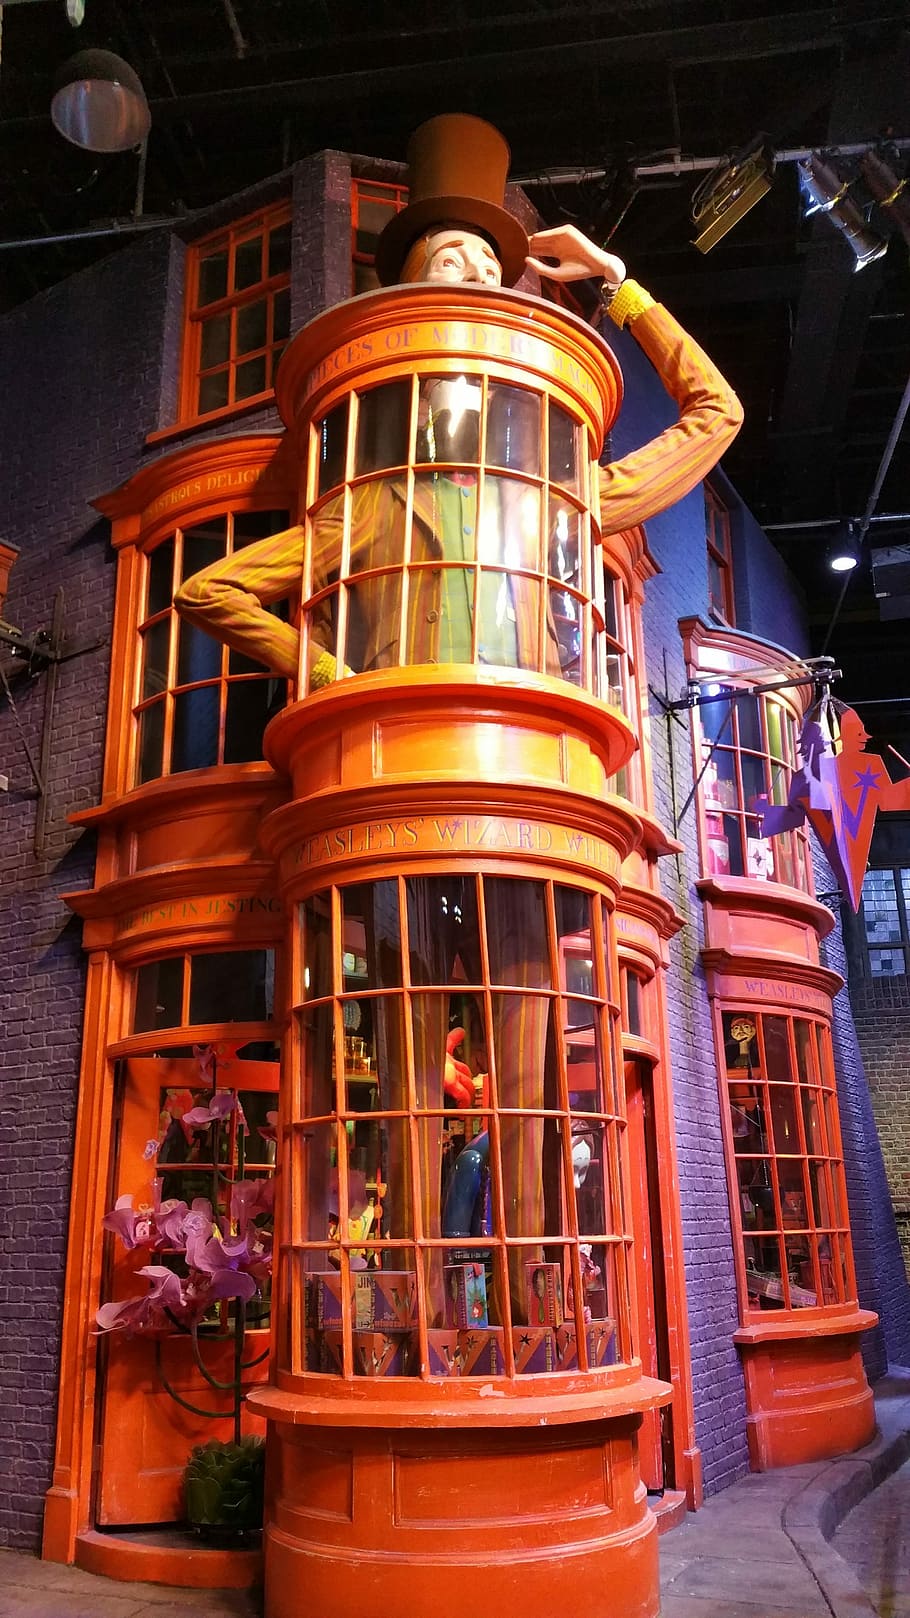 Harry Potter, Warner Bros, Studio, warner studio, harry potter studio, diagon alley, weasleys' wizard wheezes, weasley, weasleys' shop, cultures